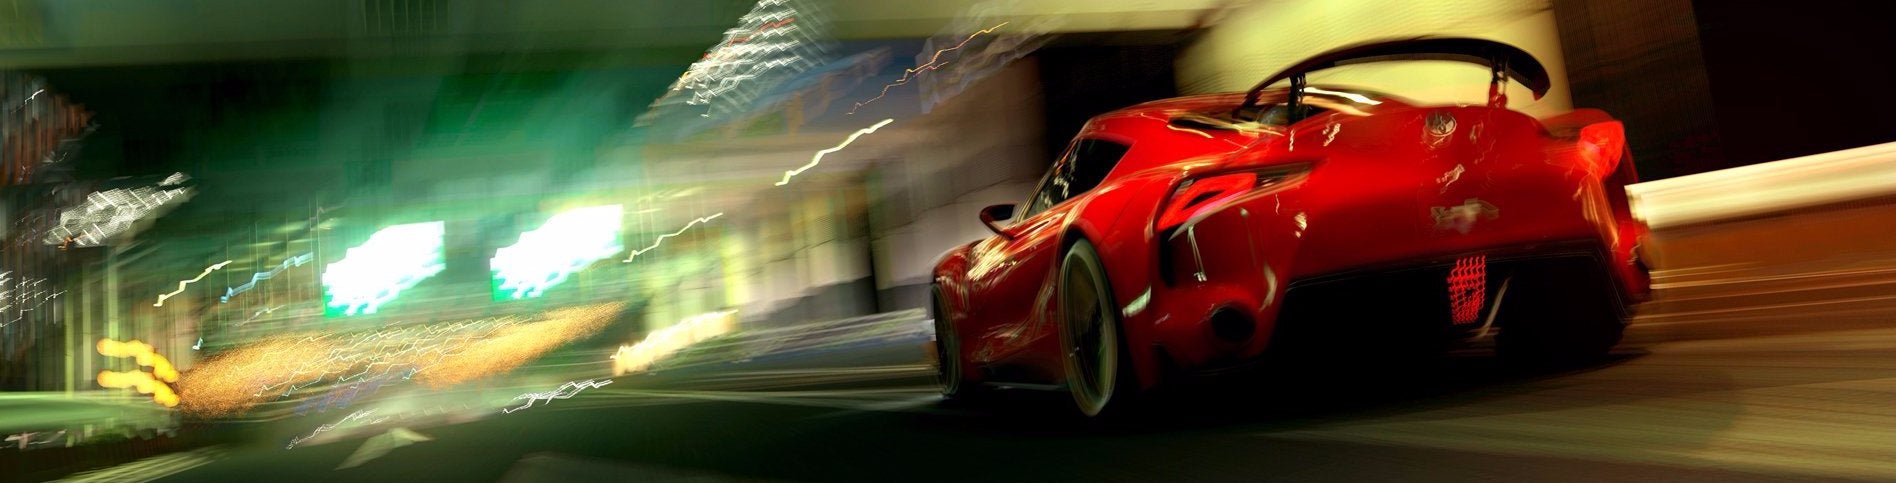 Immagine di Gran Turismo 6 - Reloaded